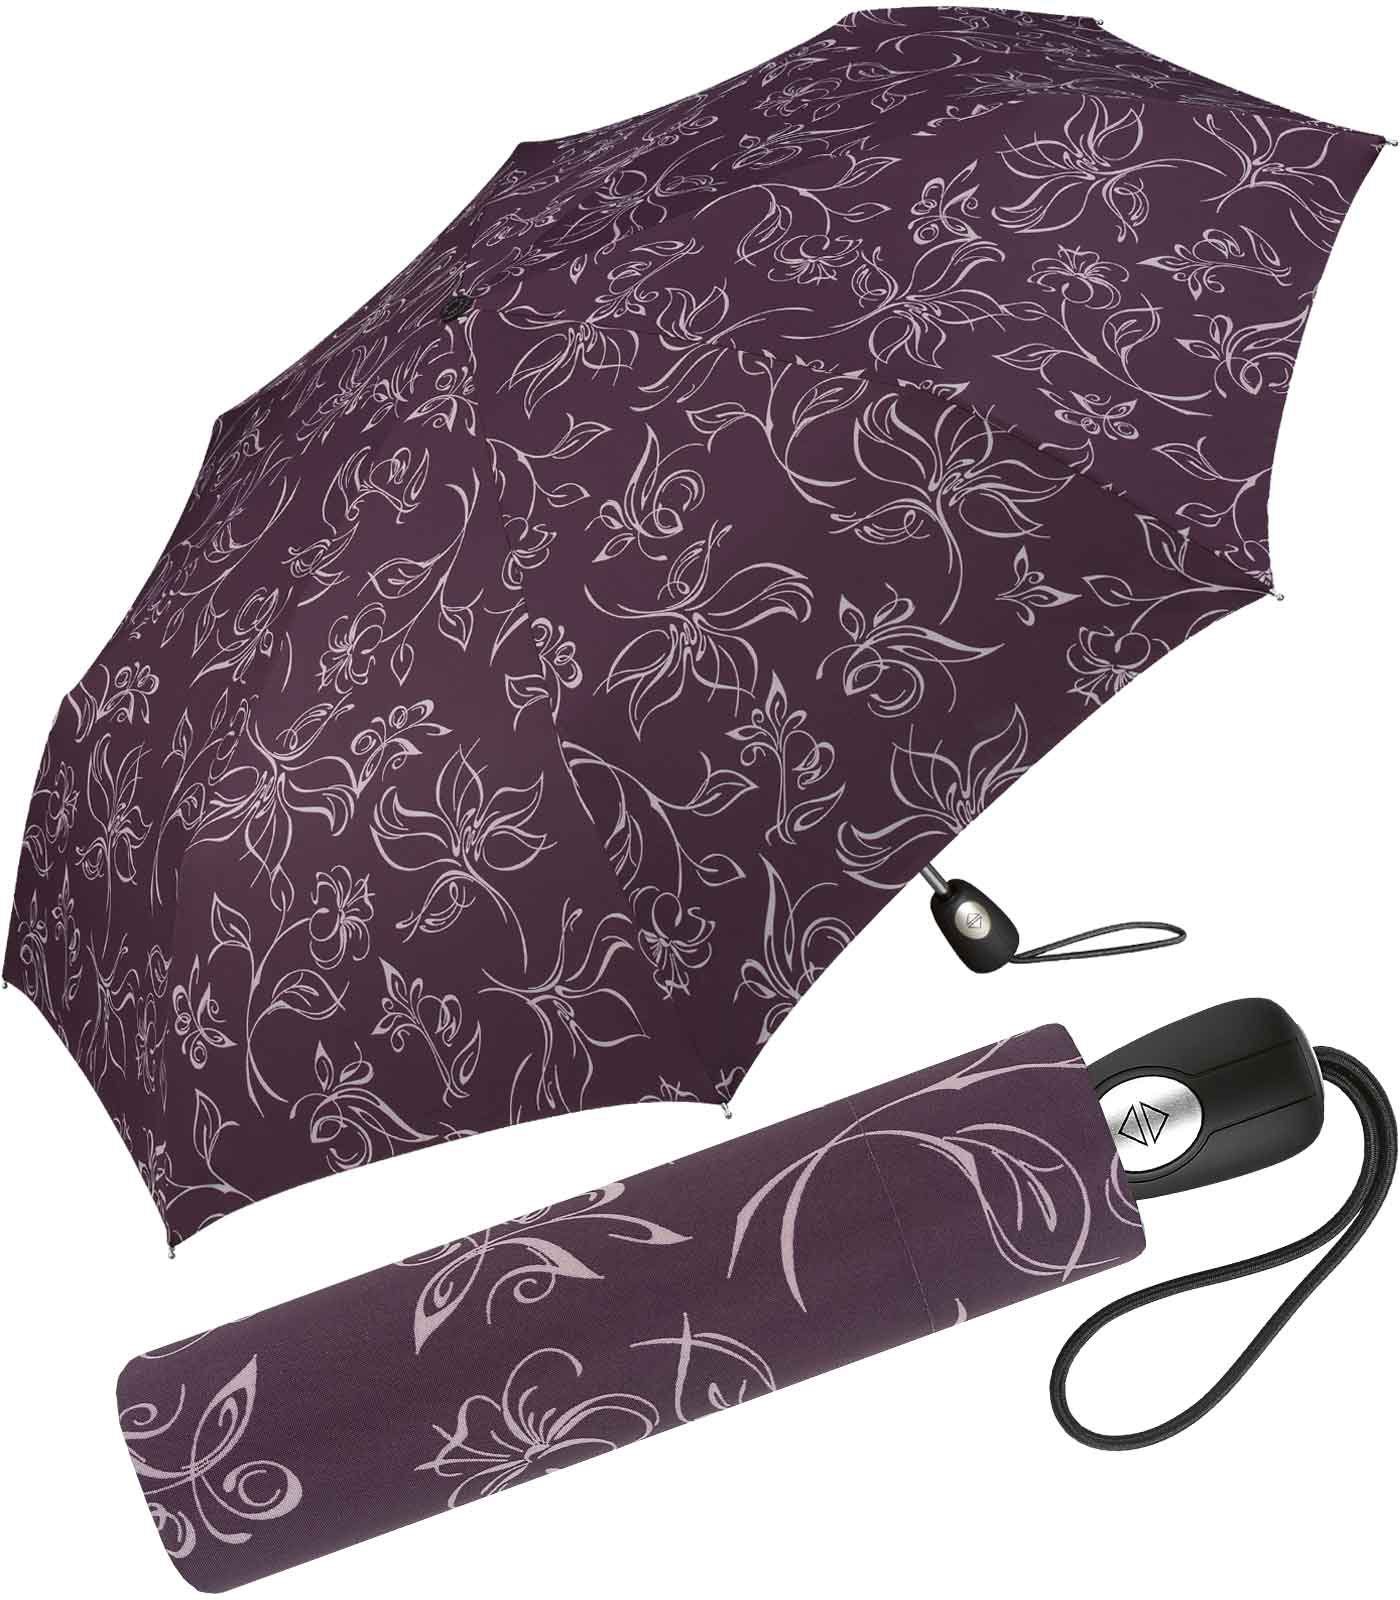 Pierre Cardin Taschenregenschirm schöner Damen-Regenschirm mit Auf-Zu-Automatik, mit wunderschönen Blumenskizzen weiß-bordeauxrot | Taschenschirme